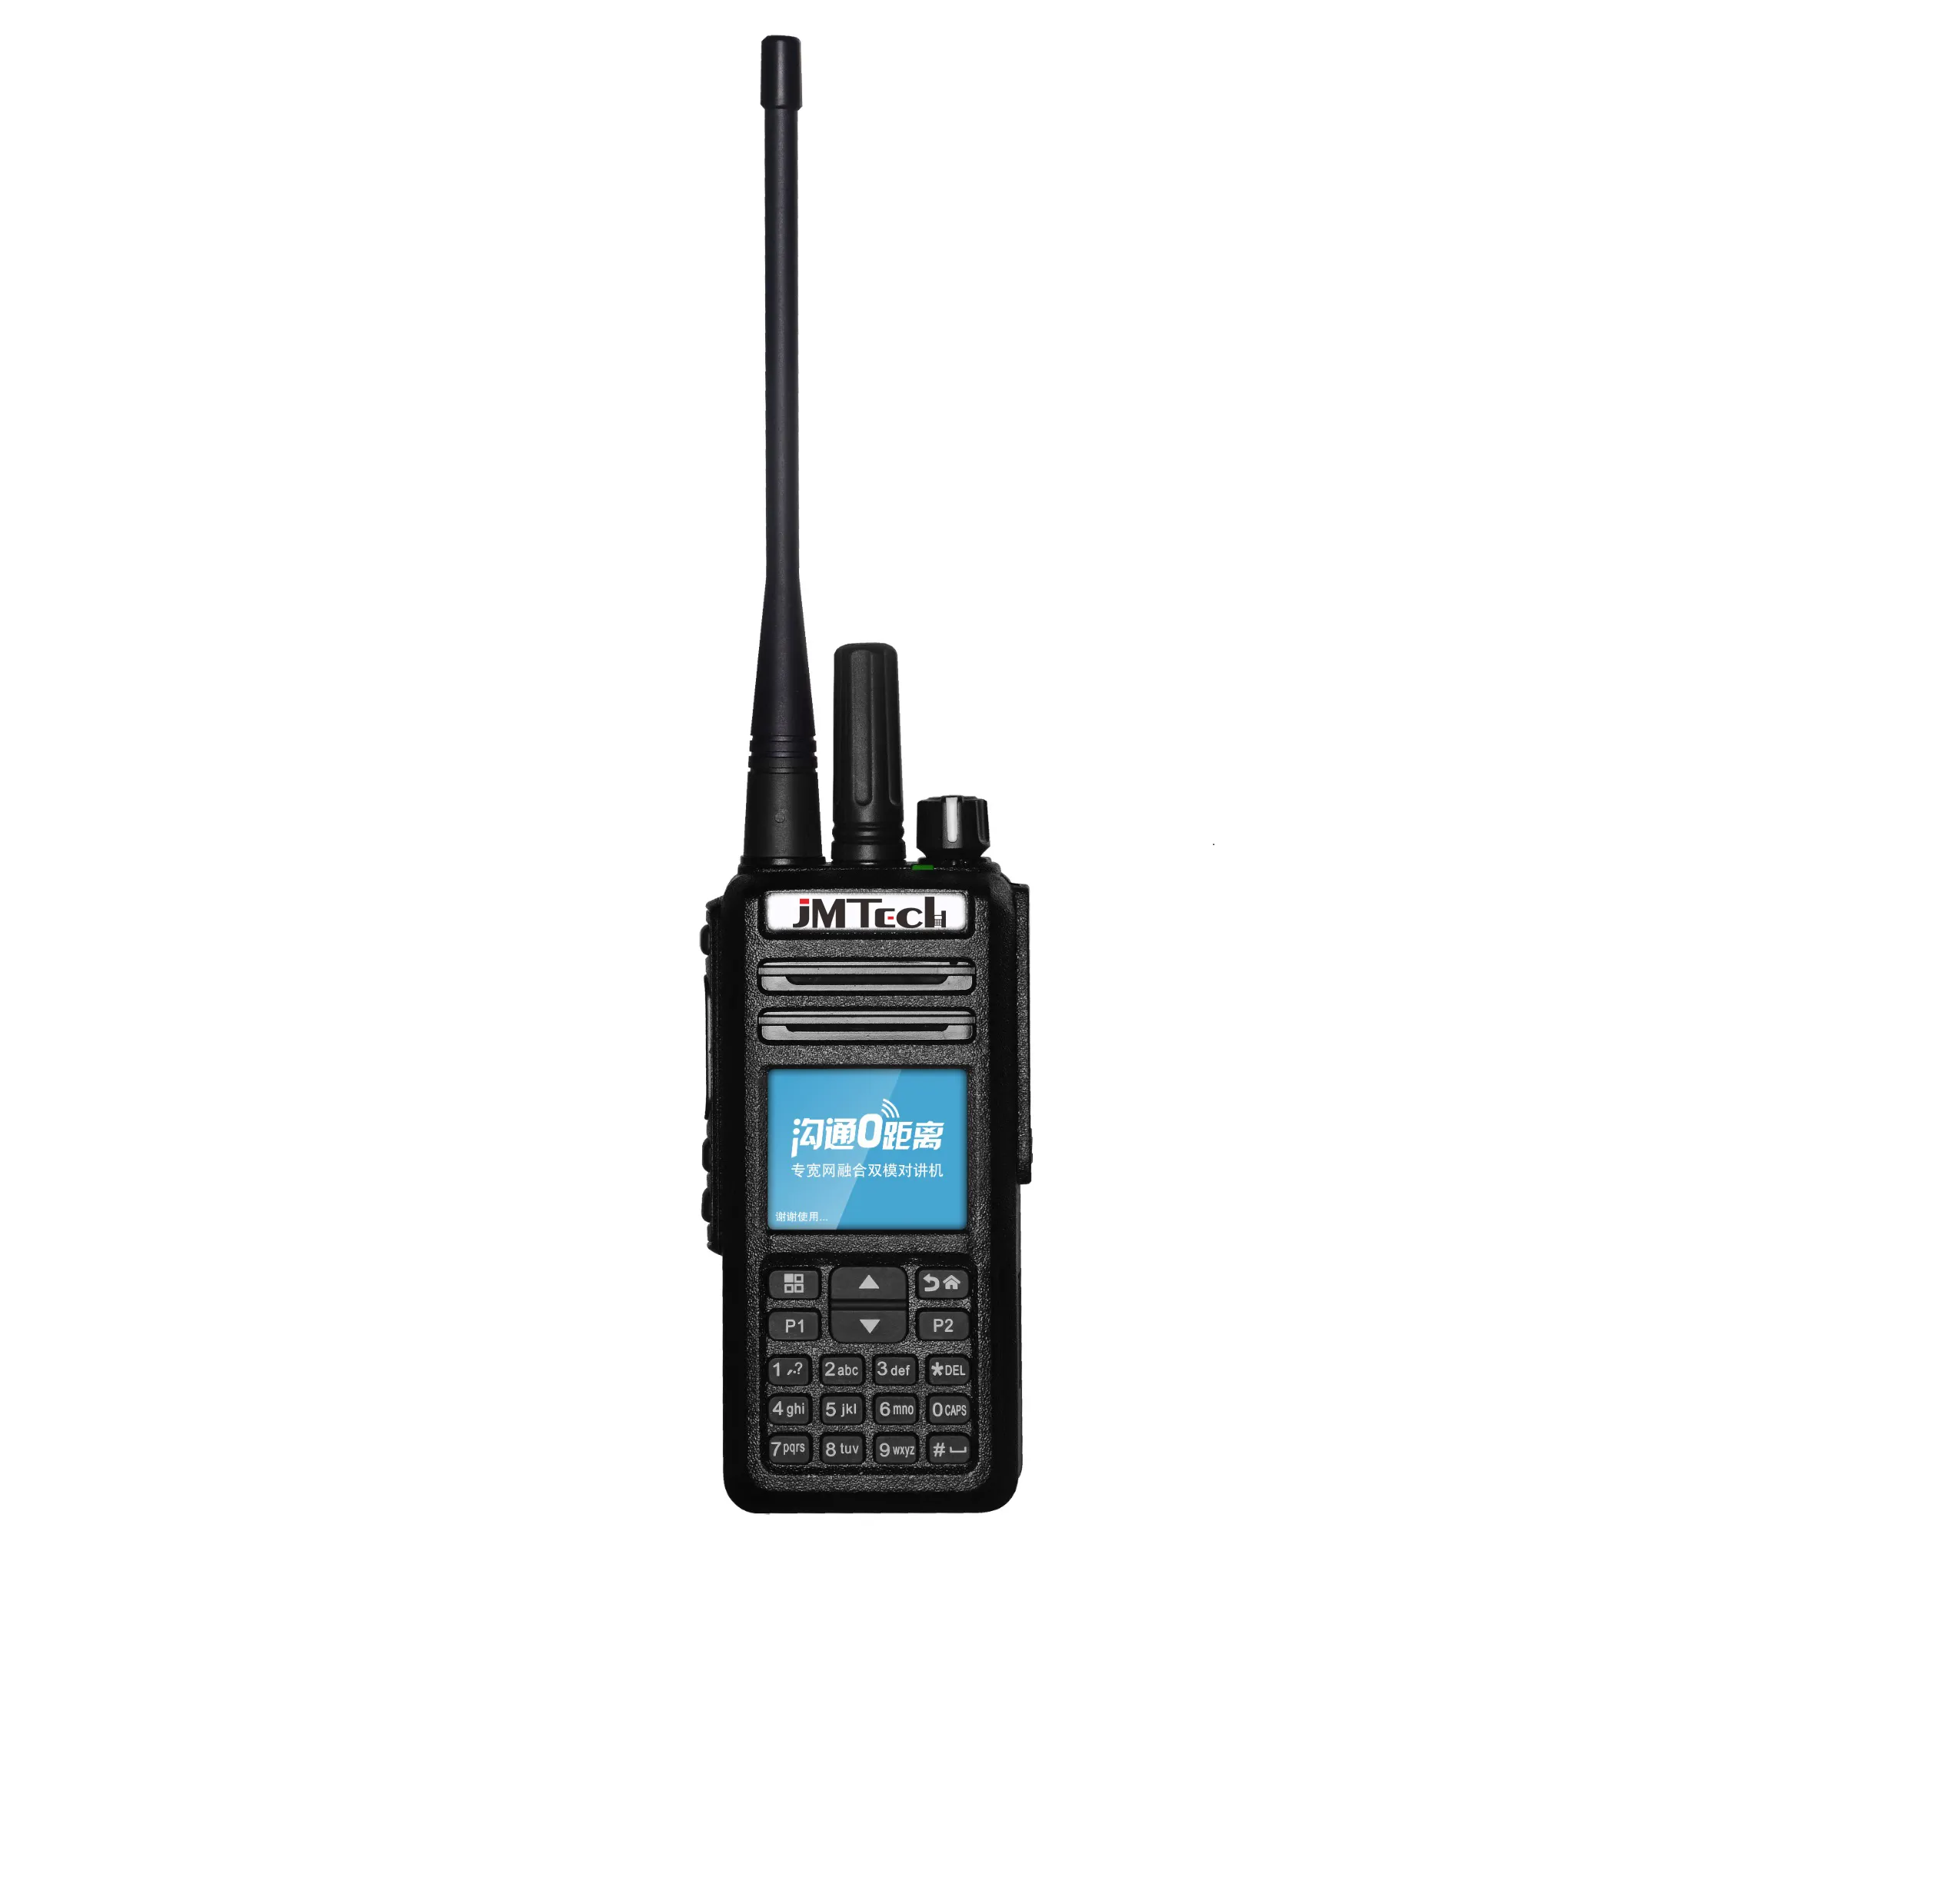 Radio 4G LTE walkie talkie portátil Radio de comunicación bidireccional global de largo alcance ilimitada